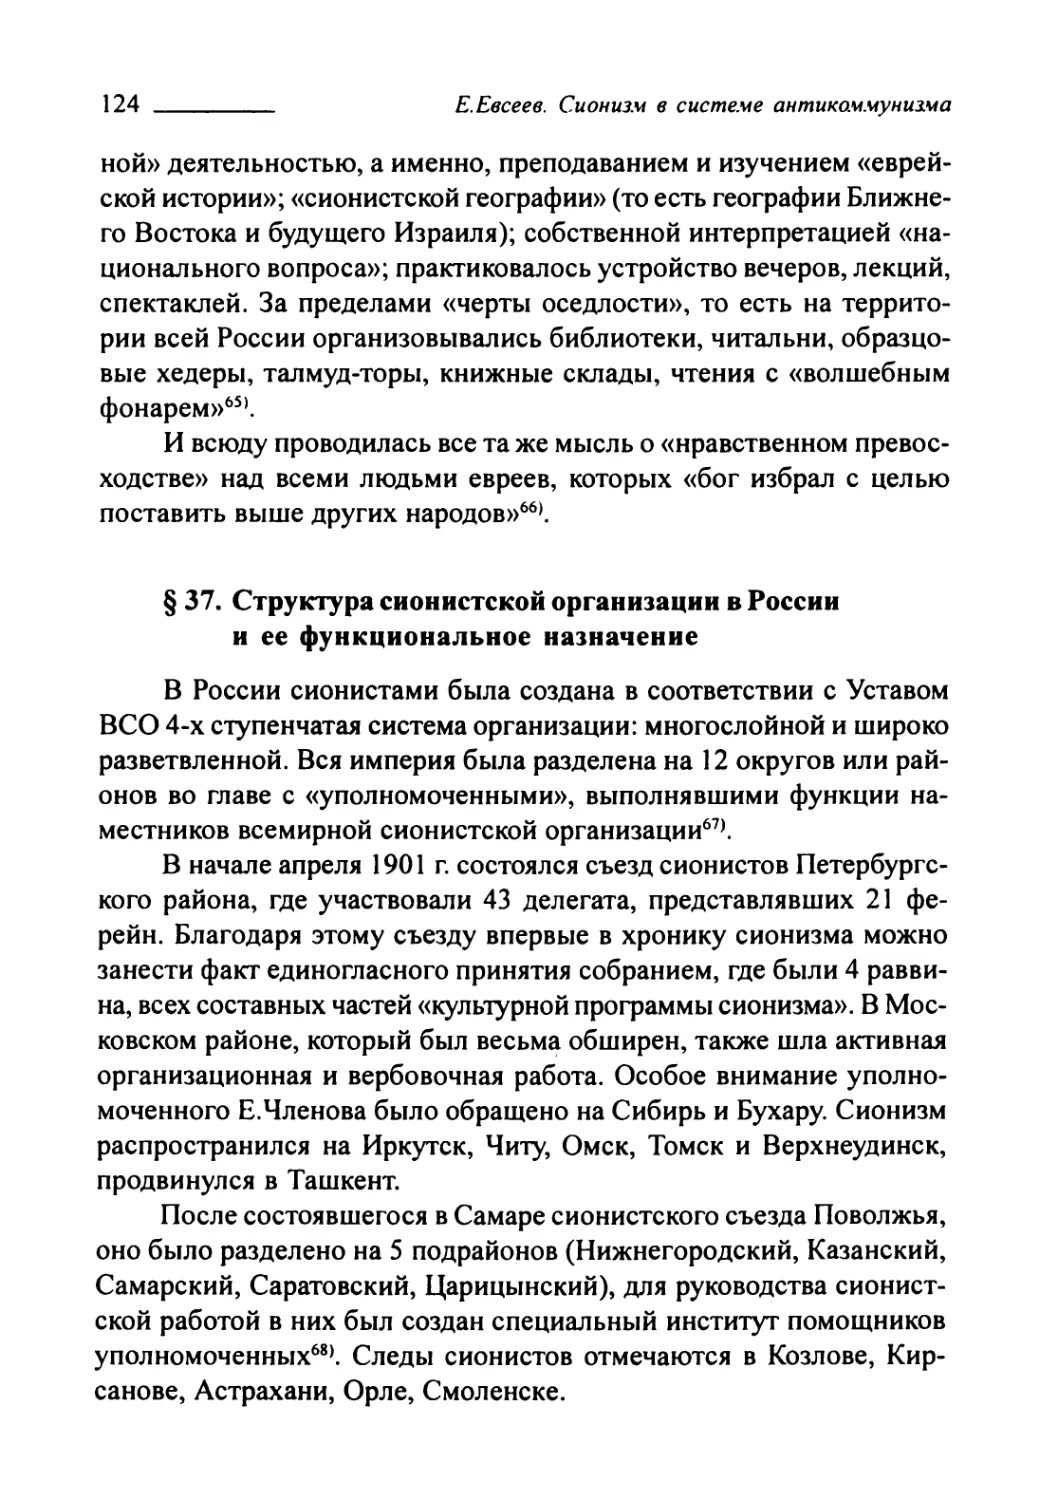 § 37. Структура сионистской организации в России и её функциональное назначение